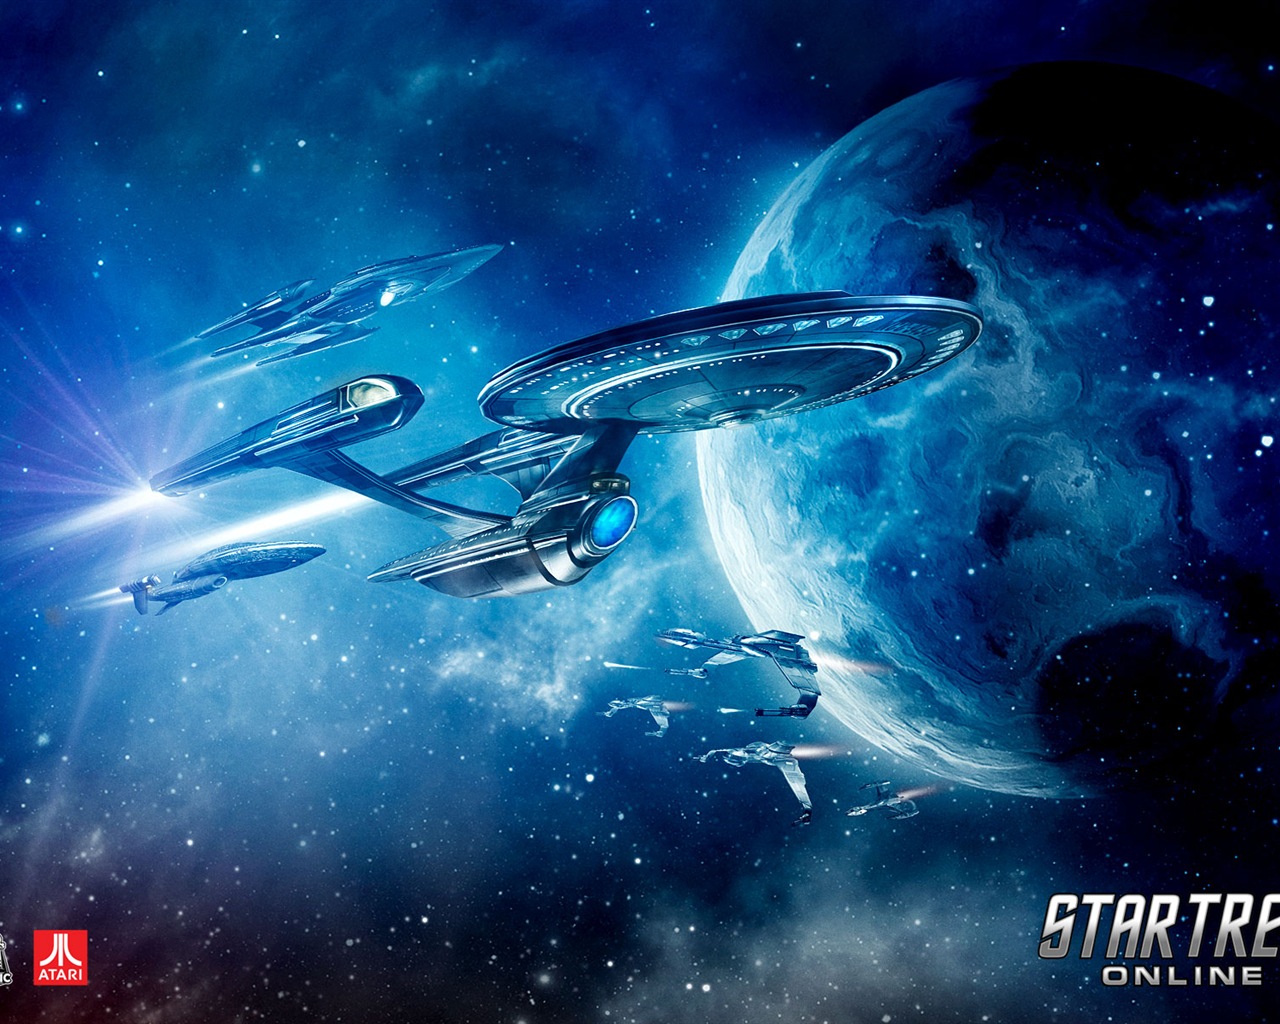 Star Trek Online 星际迷航在线 游戏高清壁纸1 - 1280x1024